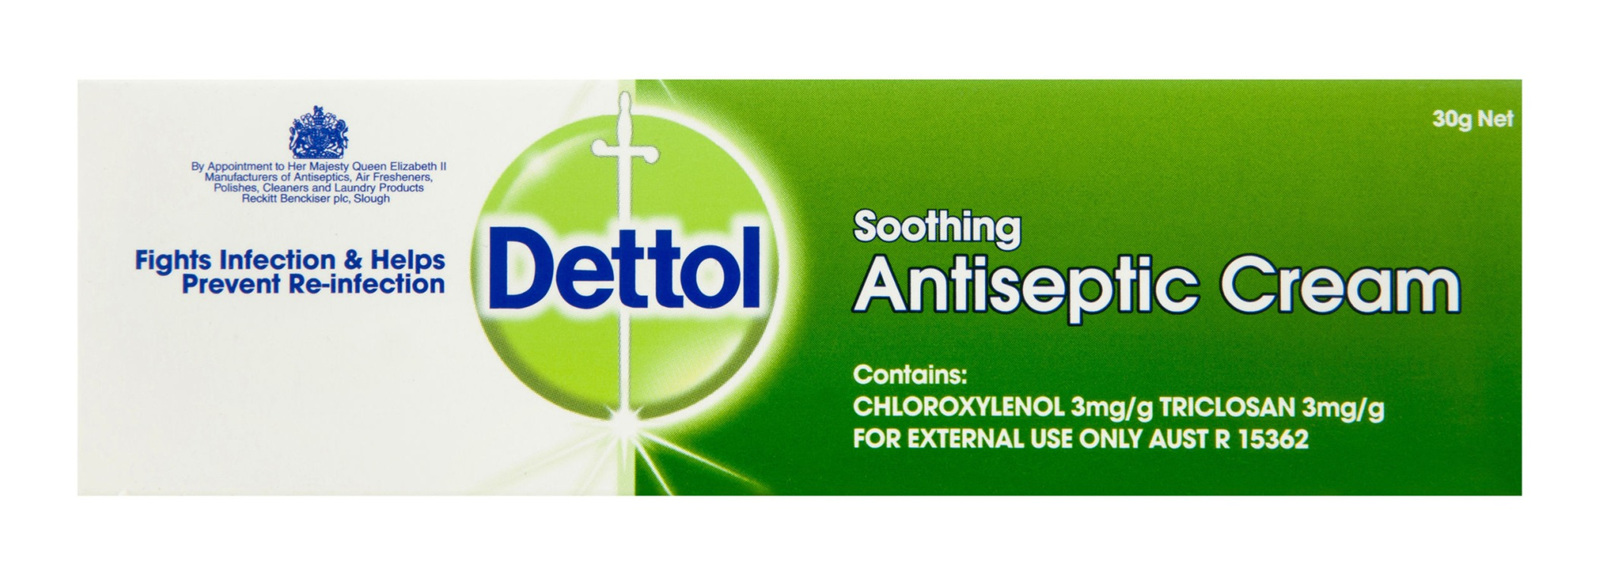 Dettol antiseptic cream